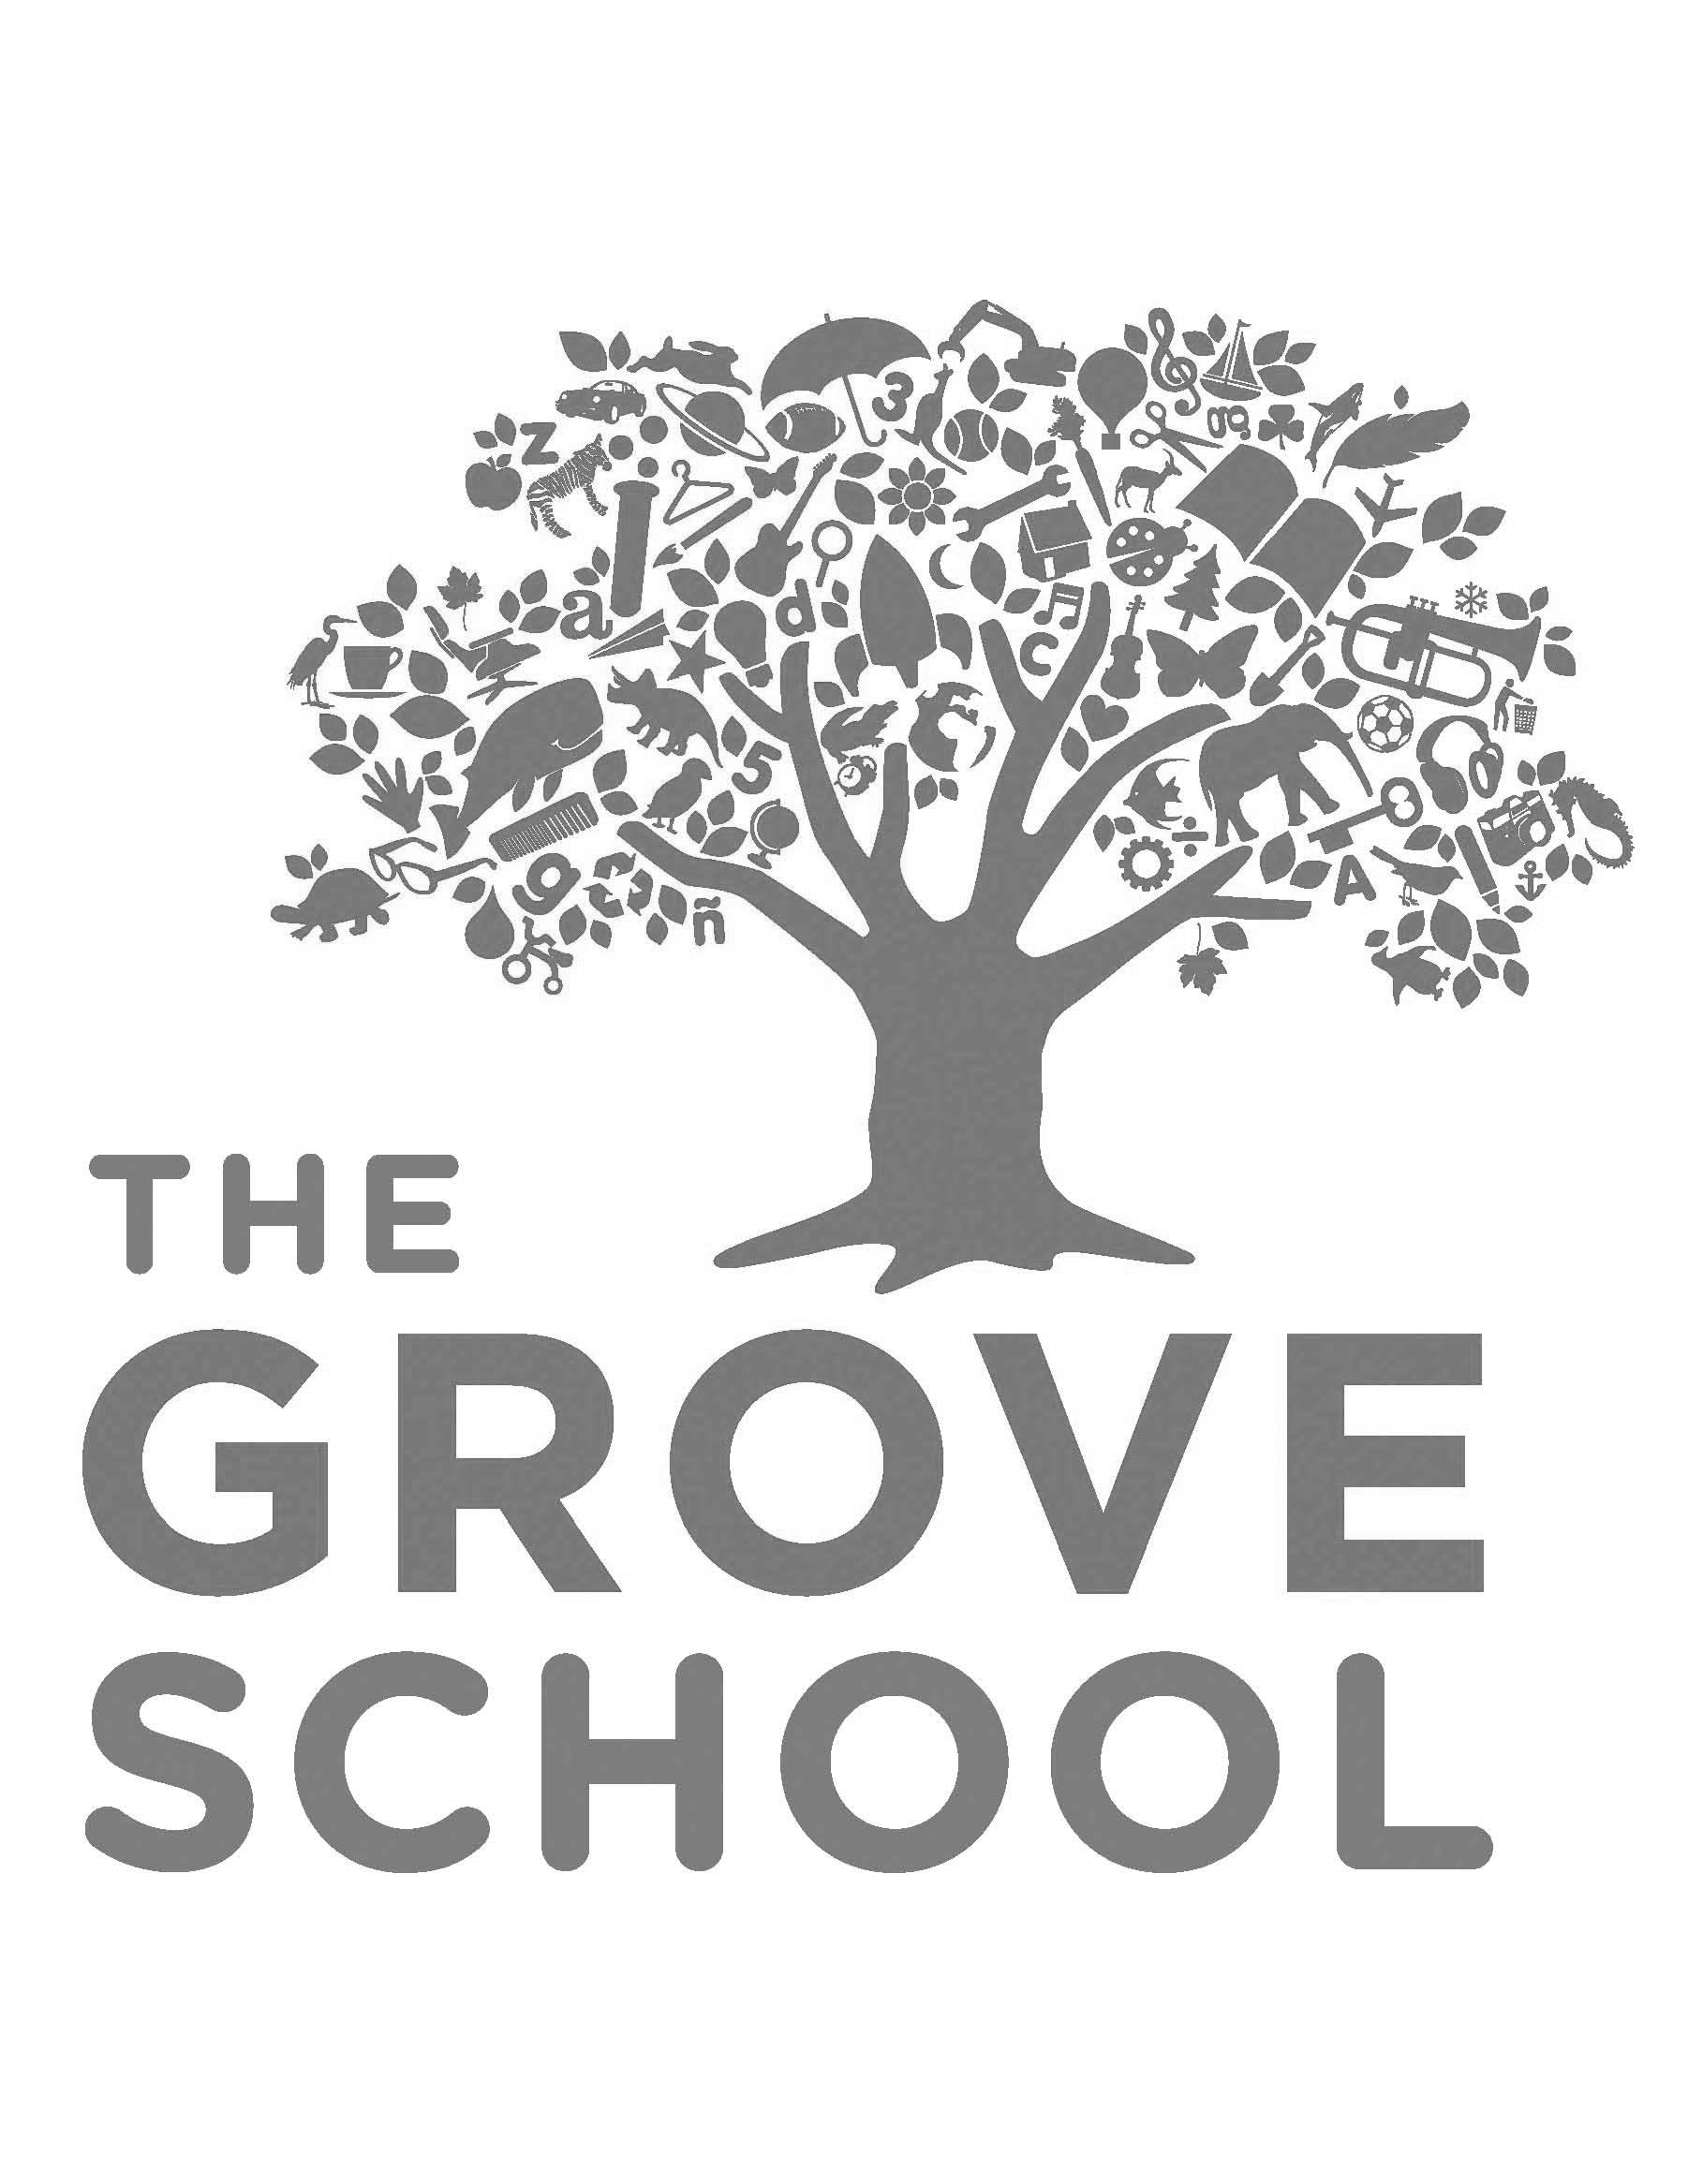  THE GROVE SCHOOL